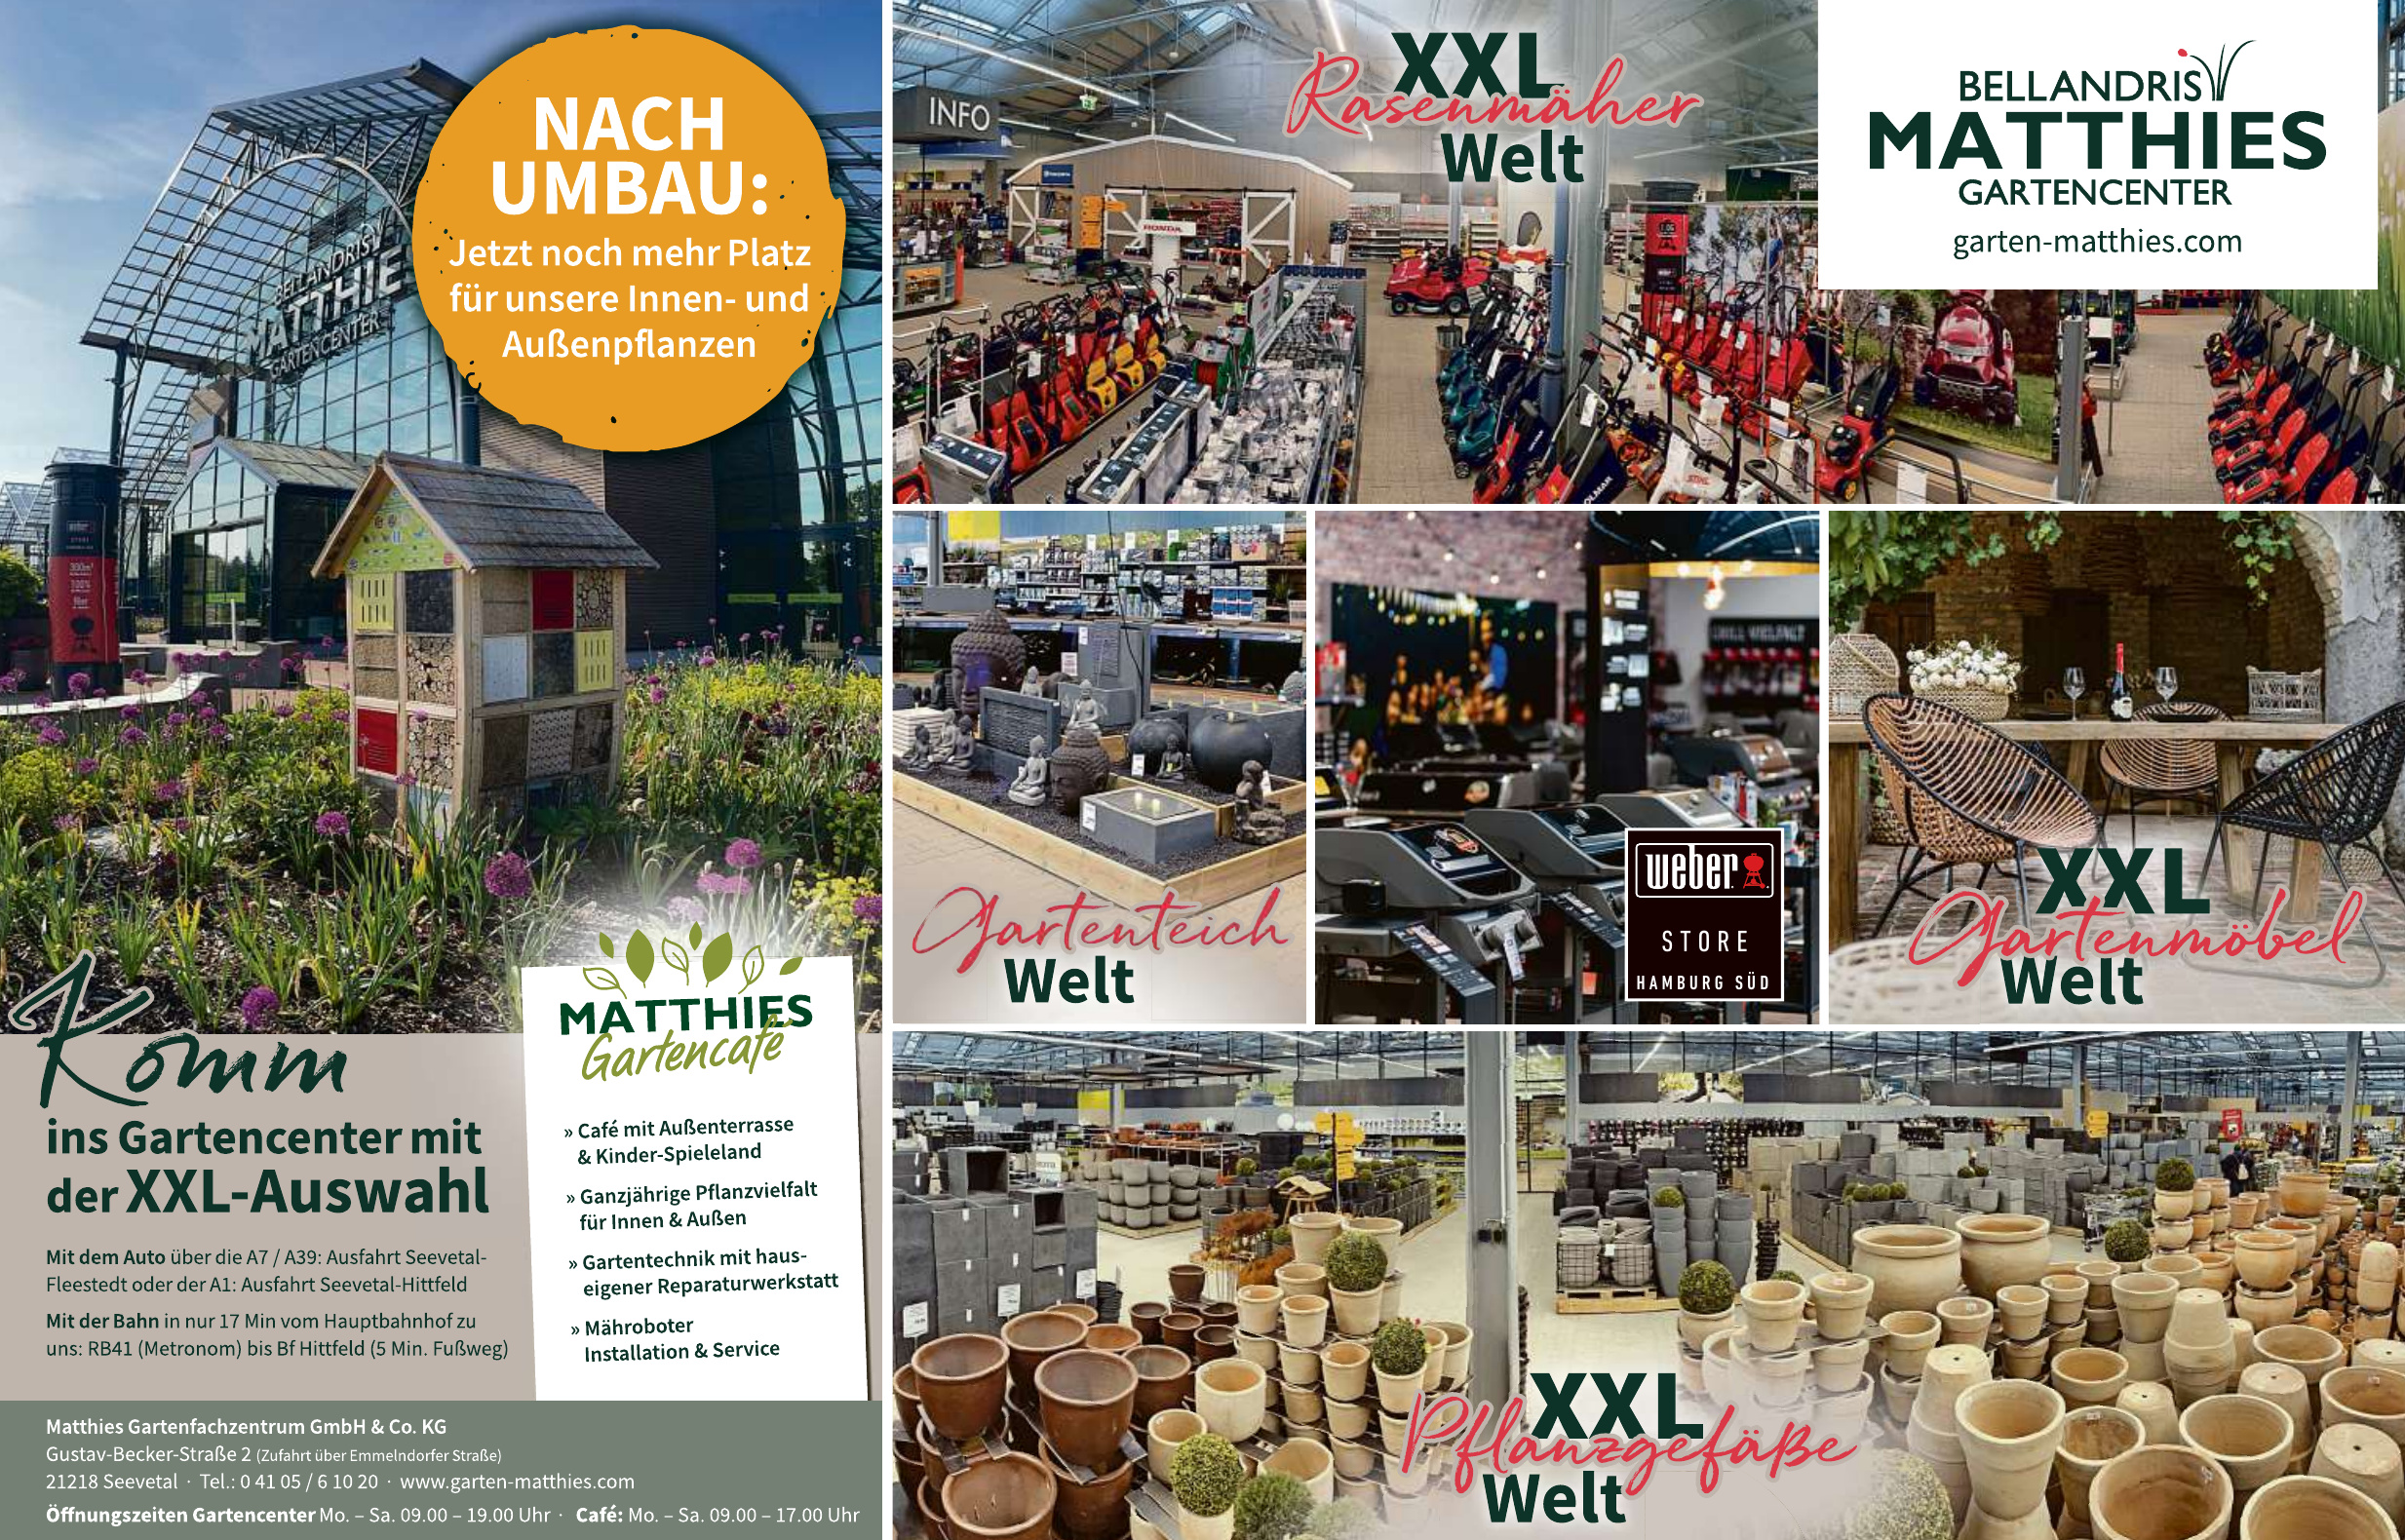 Matthies Gartenfachzentrum GmbH & Co. KG